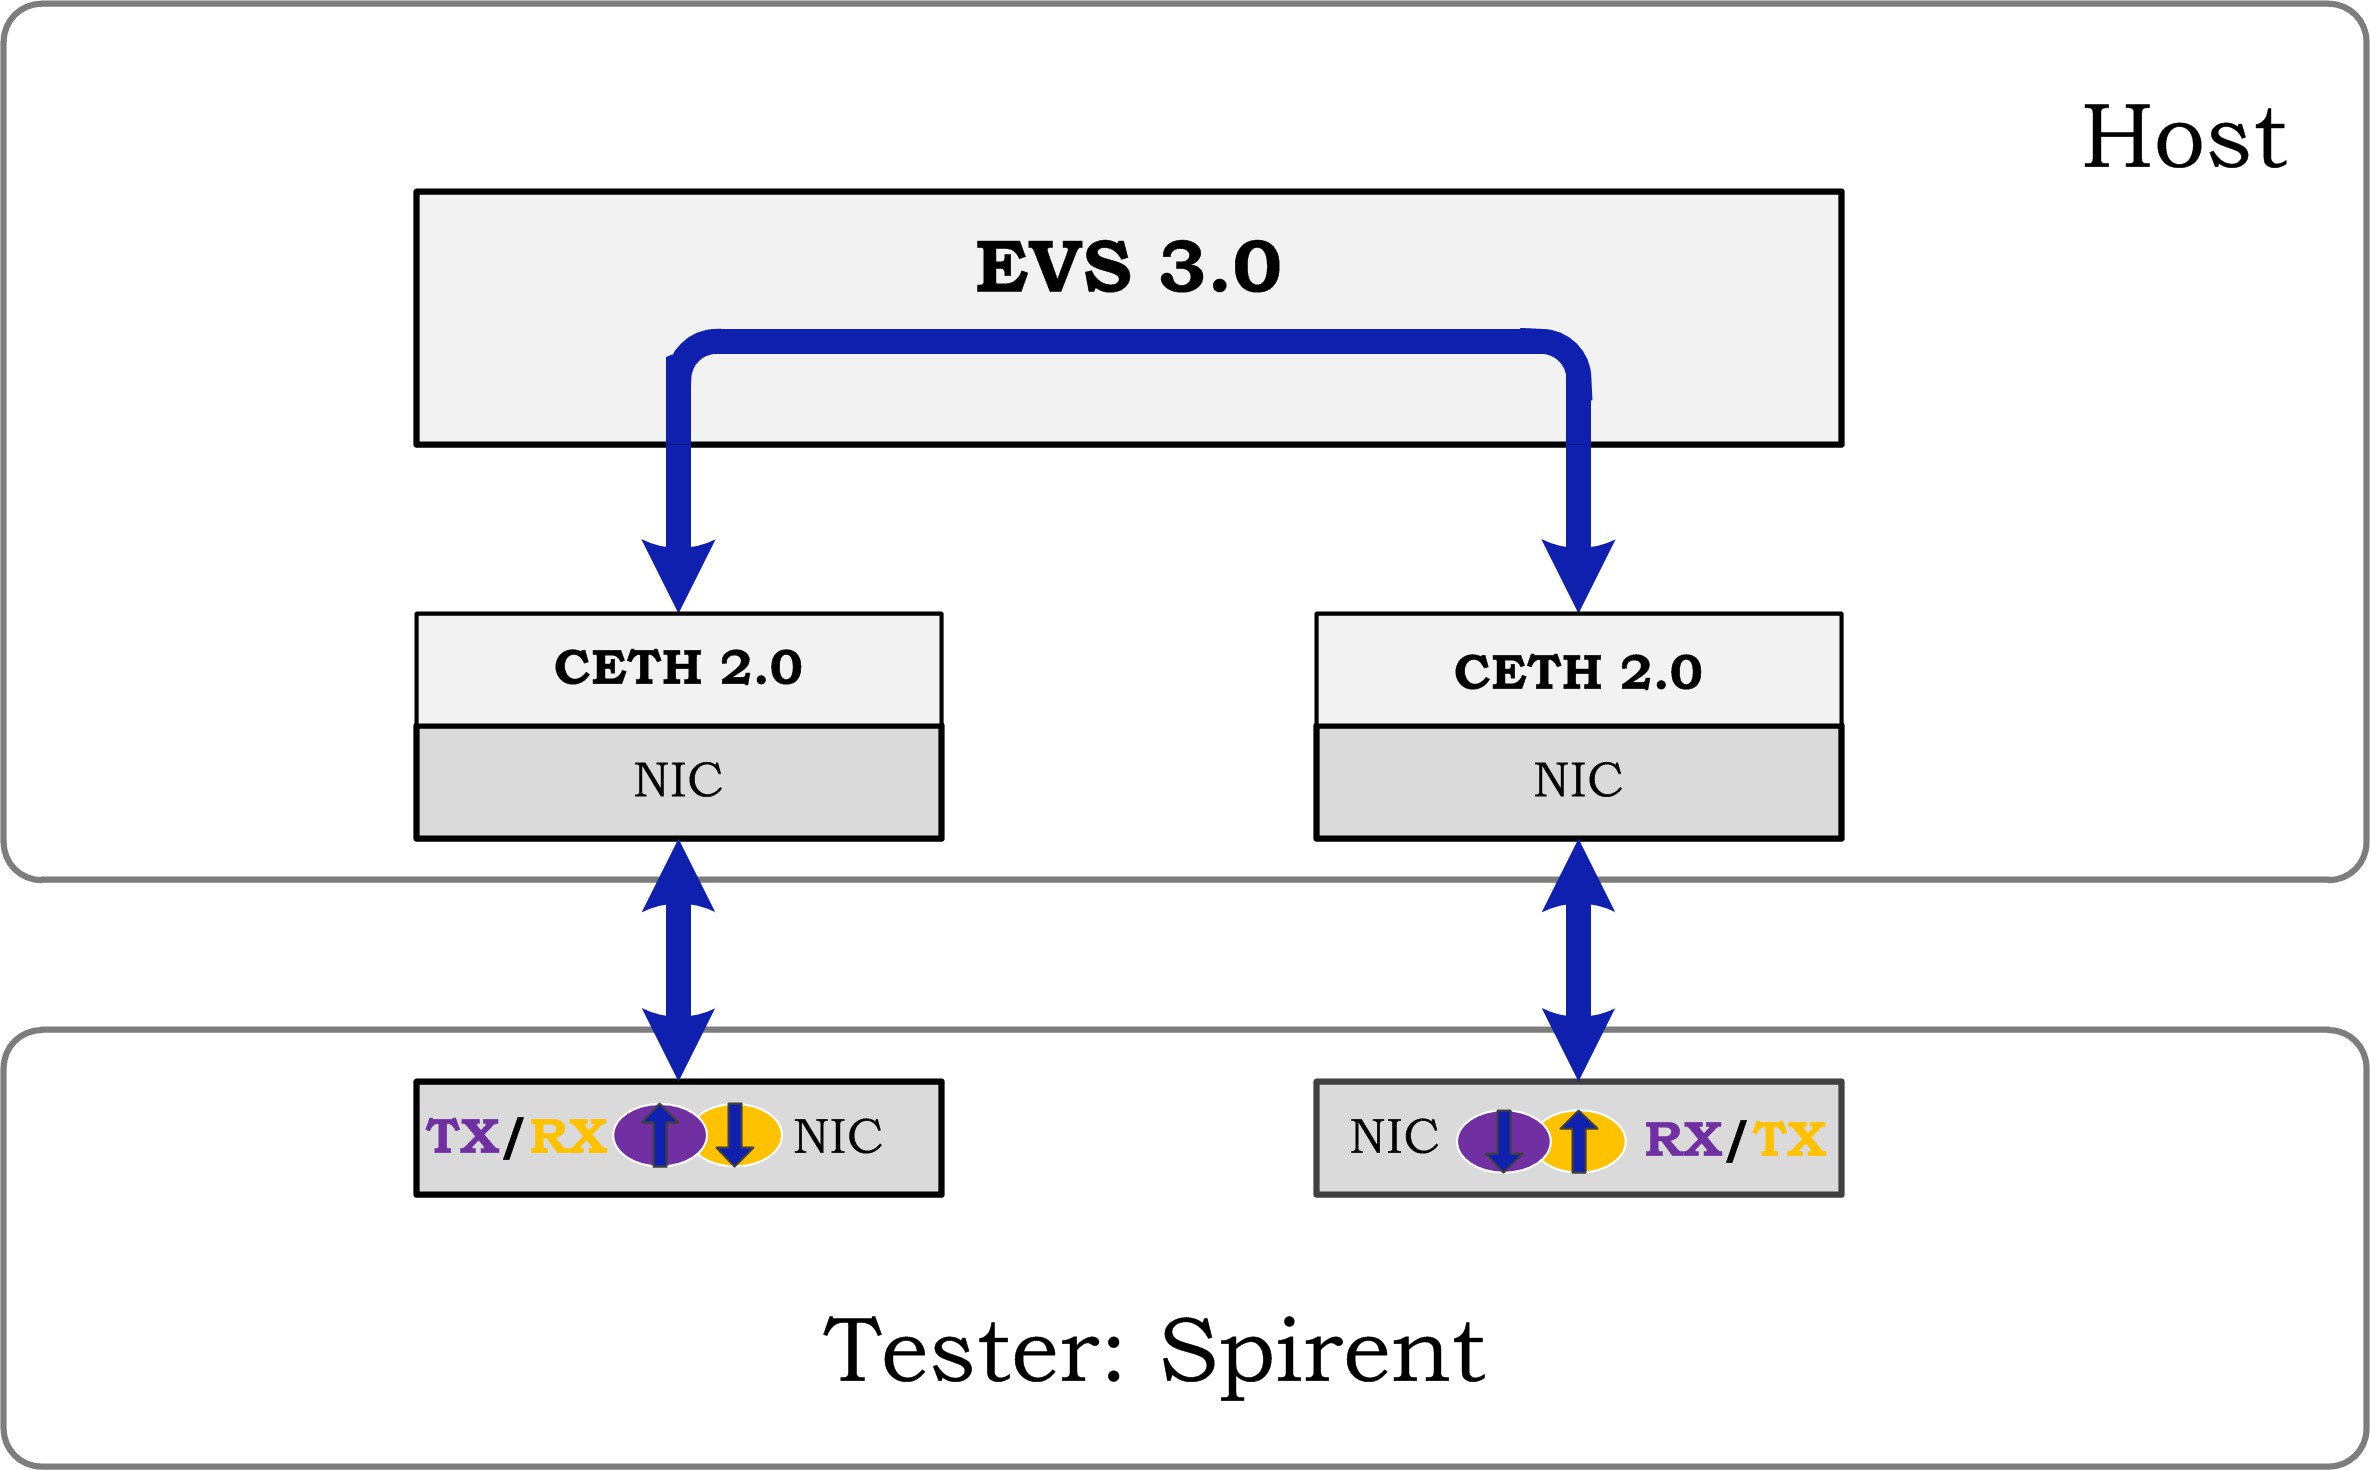 testsuites/vstf/vstf_scripts/vstf/controller/res/spirent/Tn-2.jpg